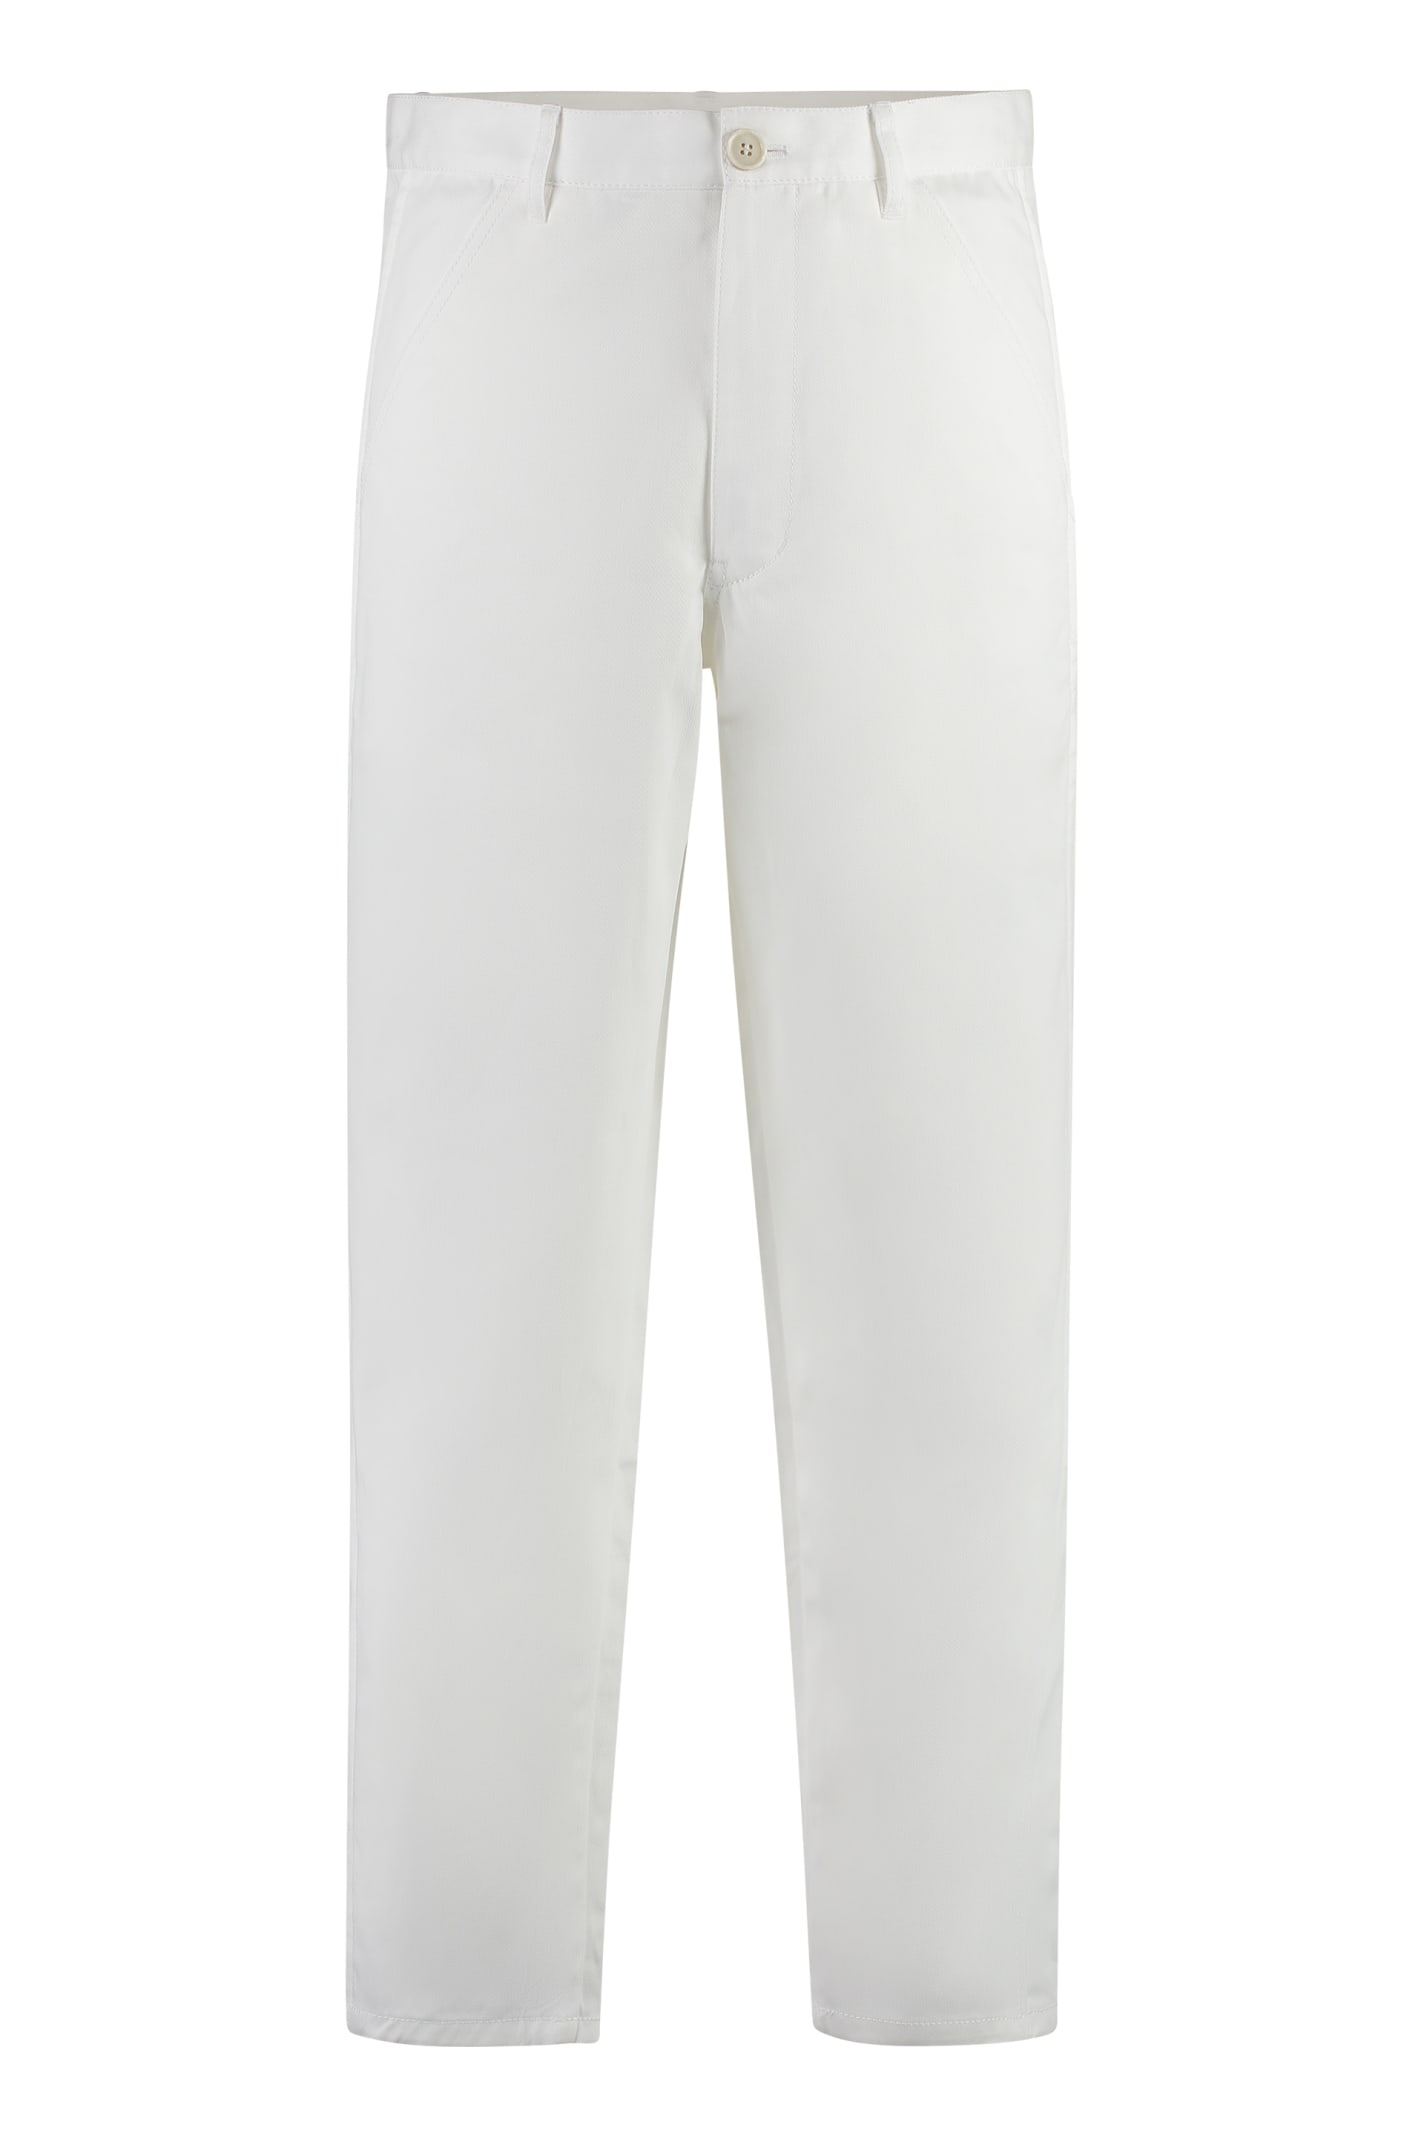 Comme Des Garçons Shirt Cotton Trousers In White